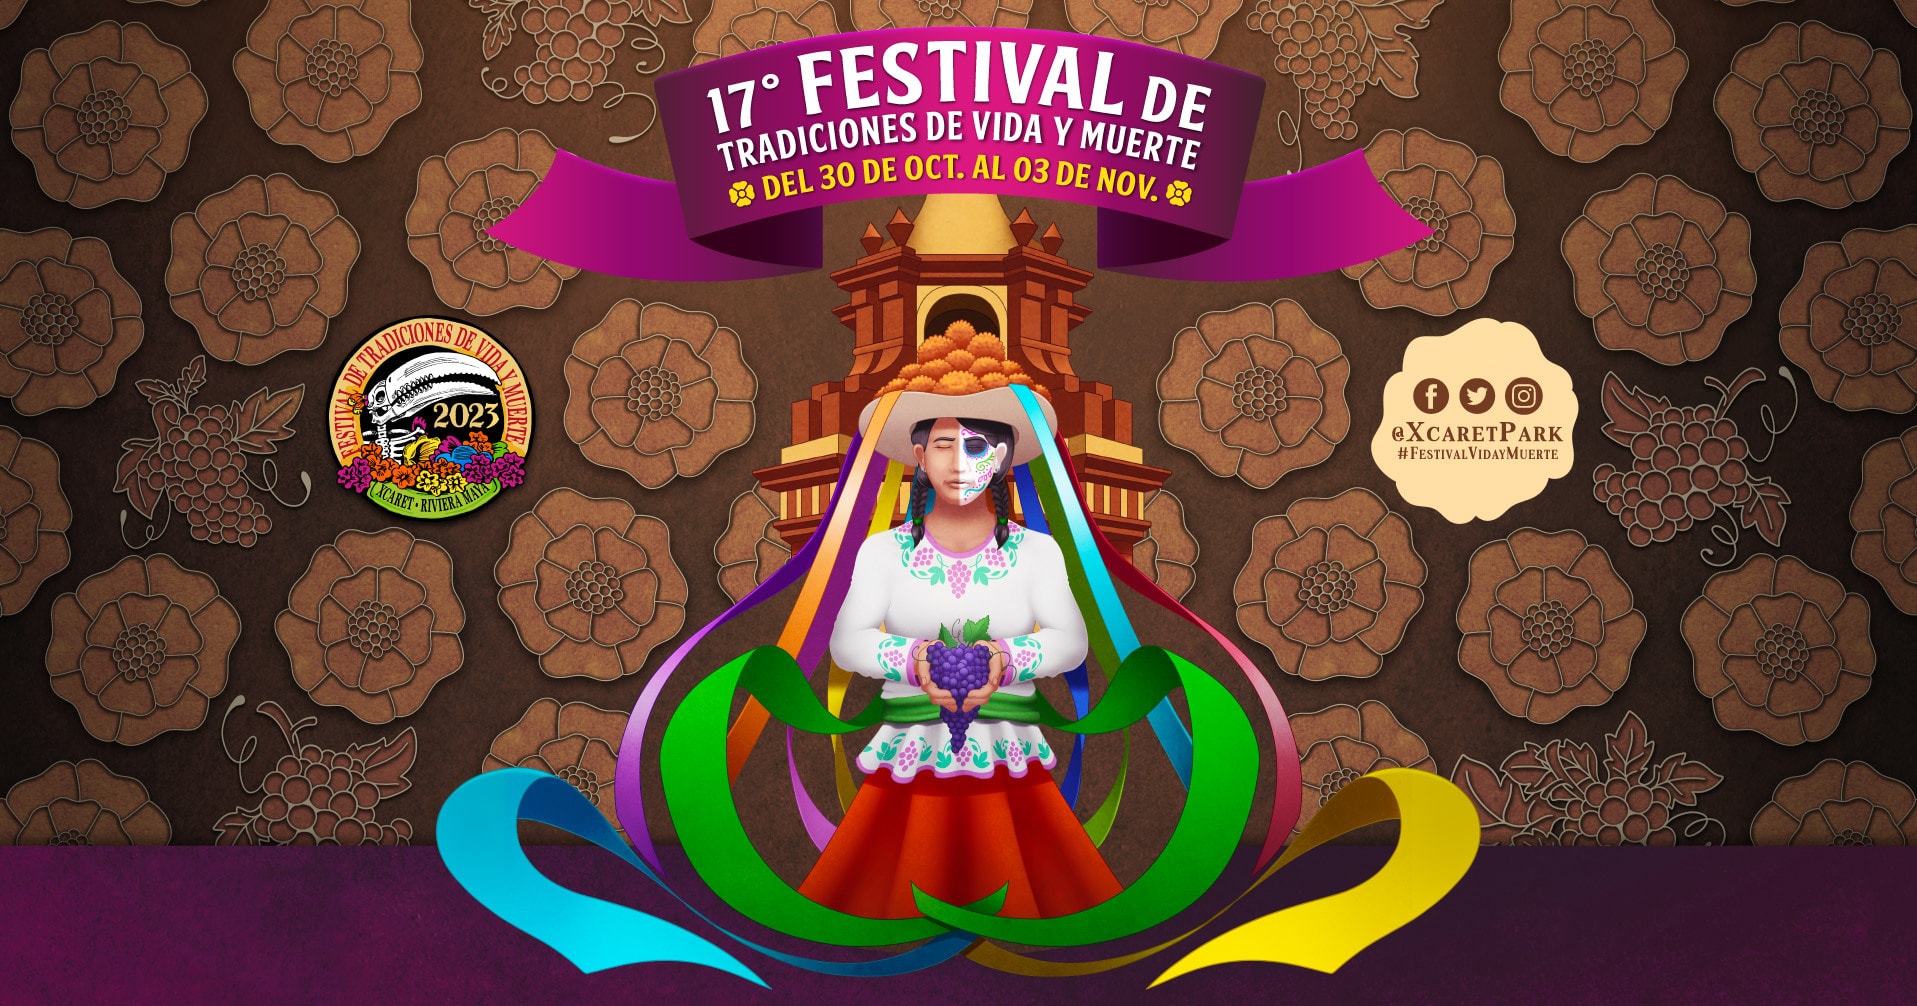 (c) Festivaldevidaymuerte.com